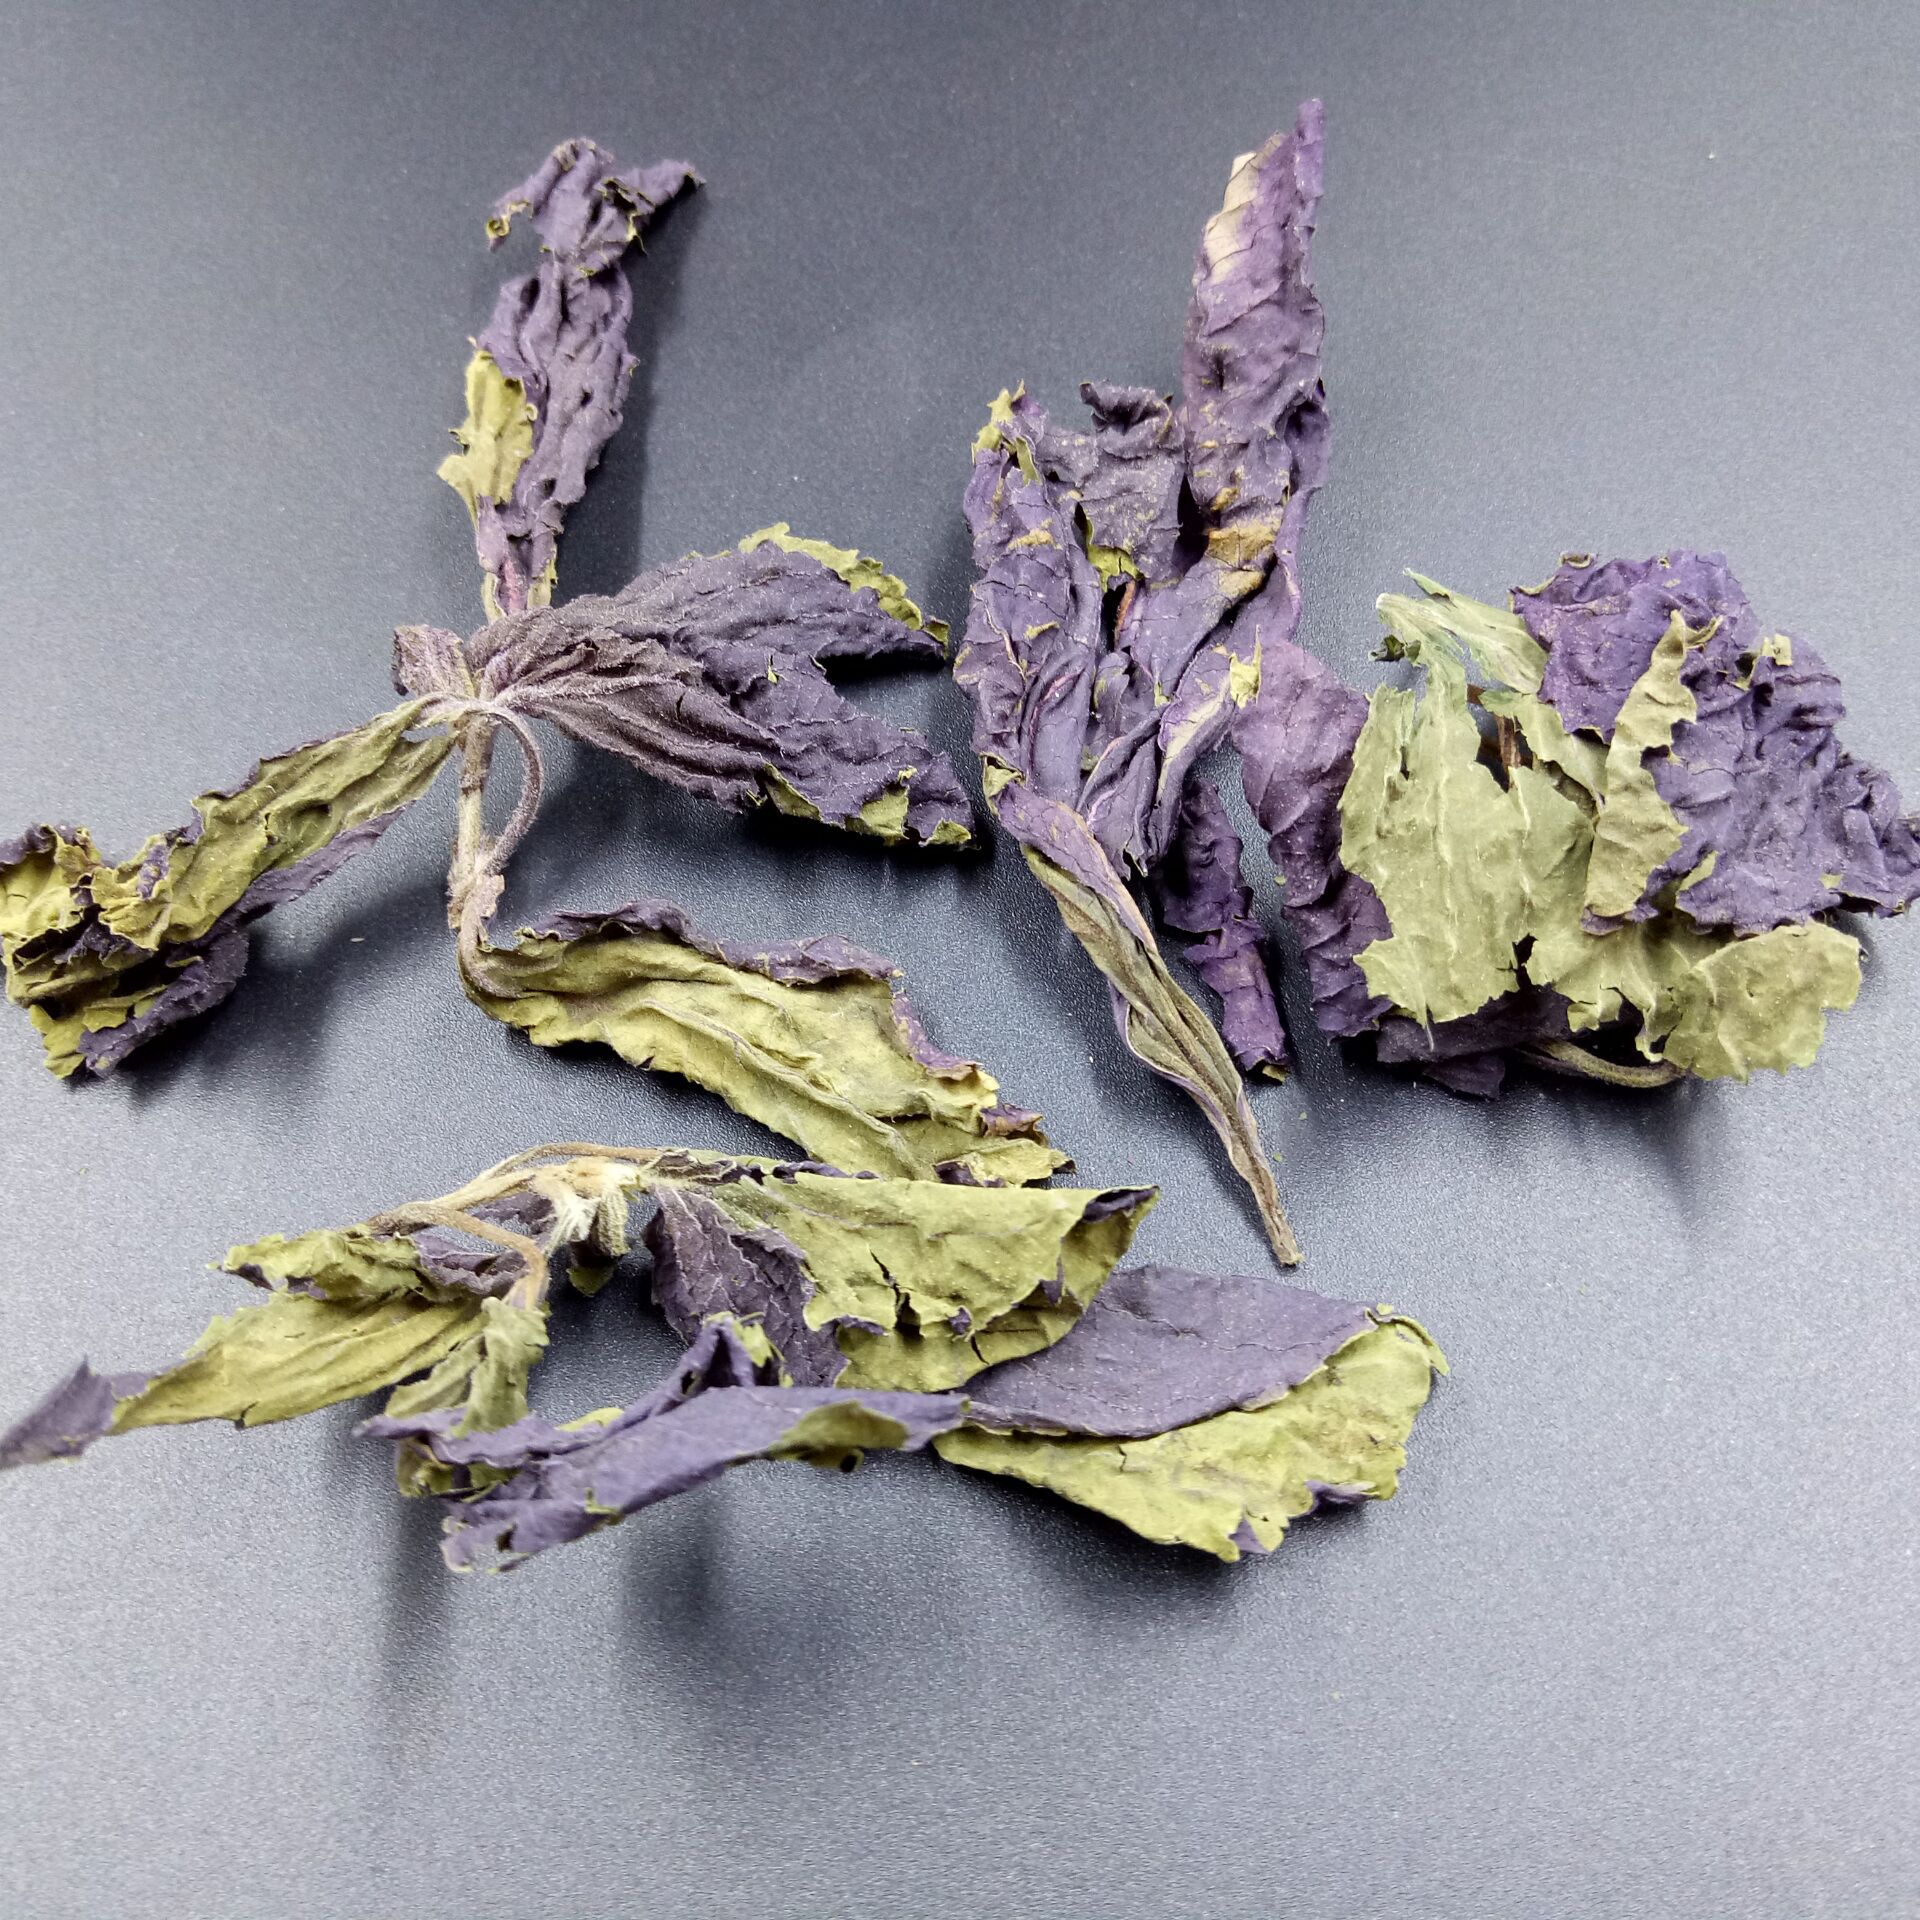 紫苏子 新货 紫苏子 中药材 紫苏籽 紫苏种子 支持药检 承接订单-阿里巴巴